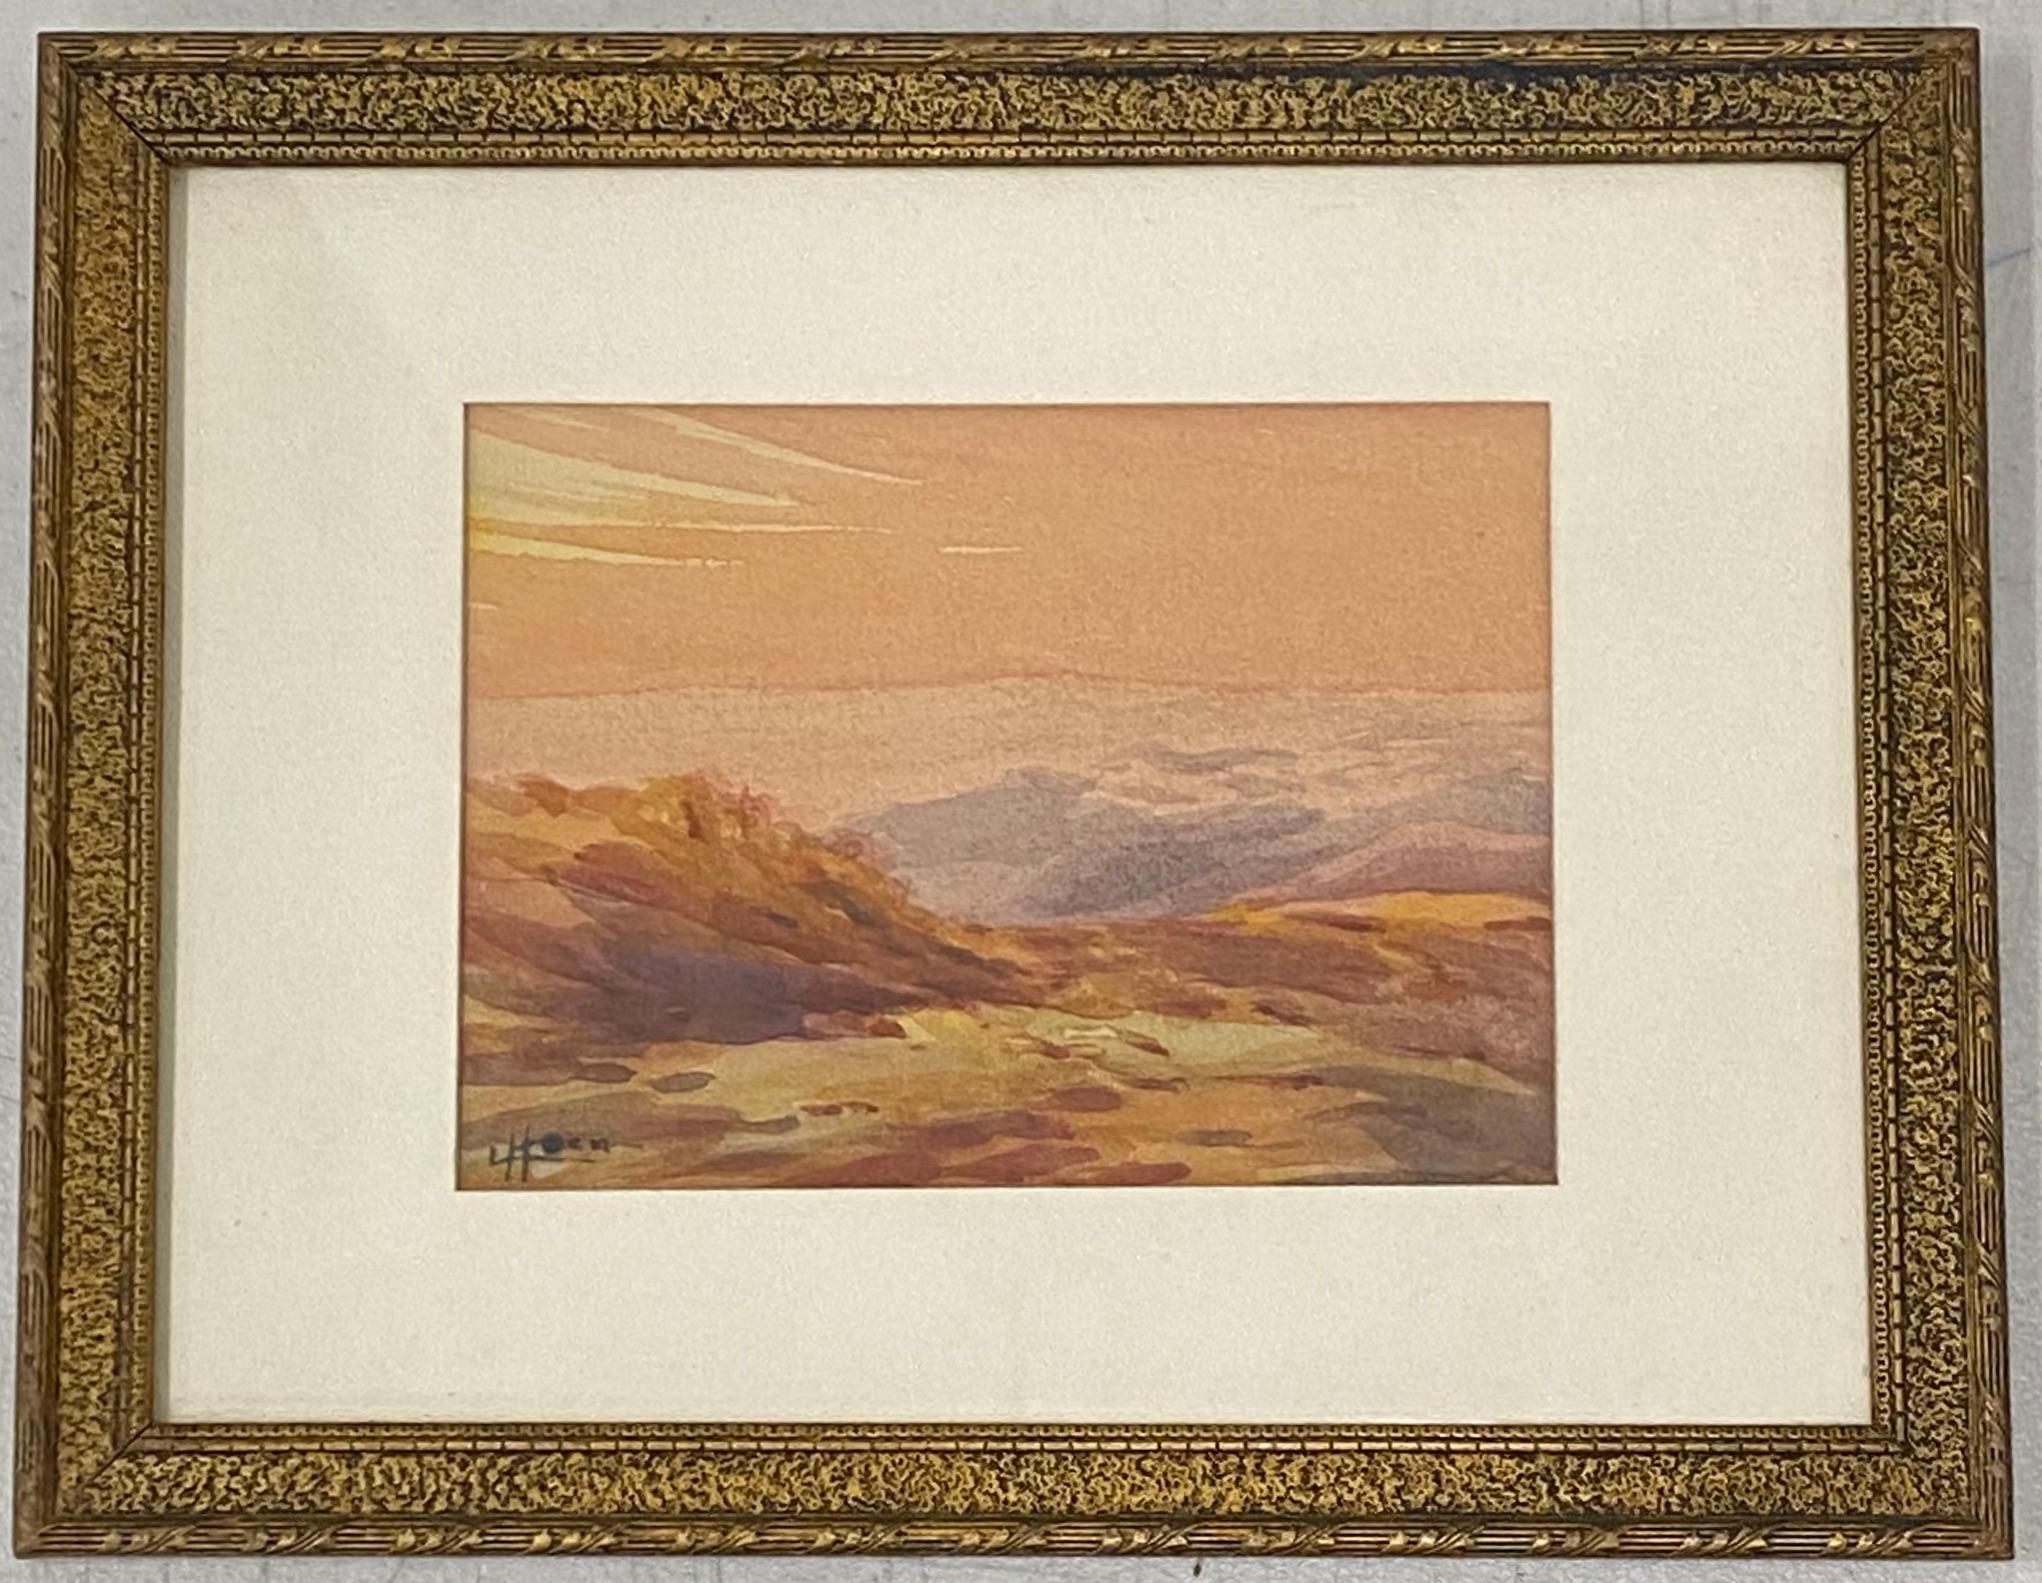 Landscape Art Unknown - Vieille peinture à l'aquarelle - Paysage de coucher de soleil en montagne du désert par L. Hoen